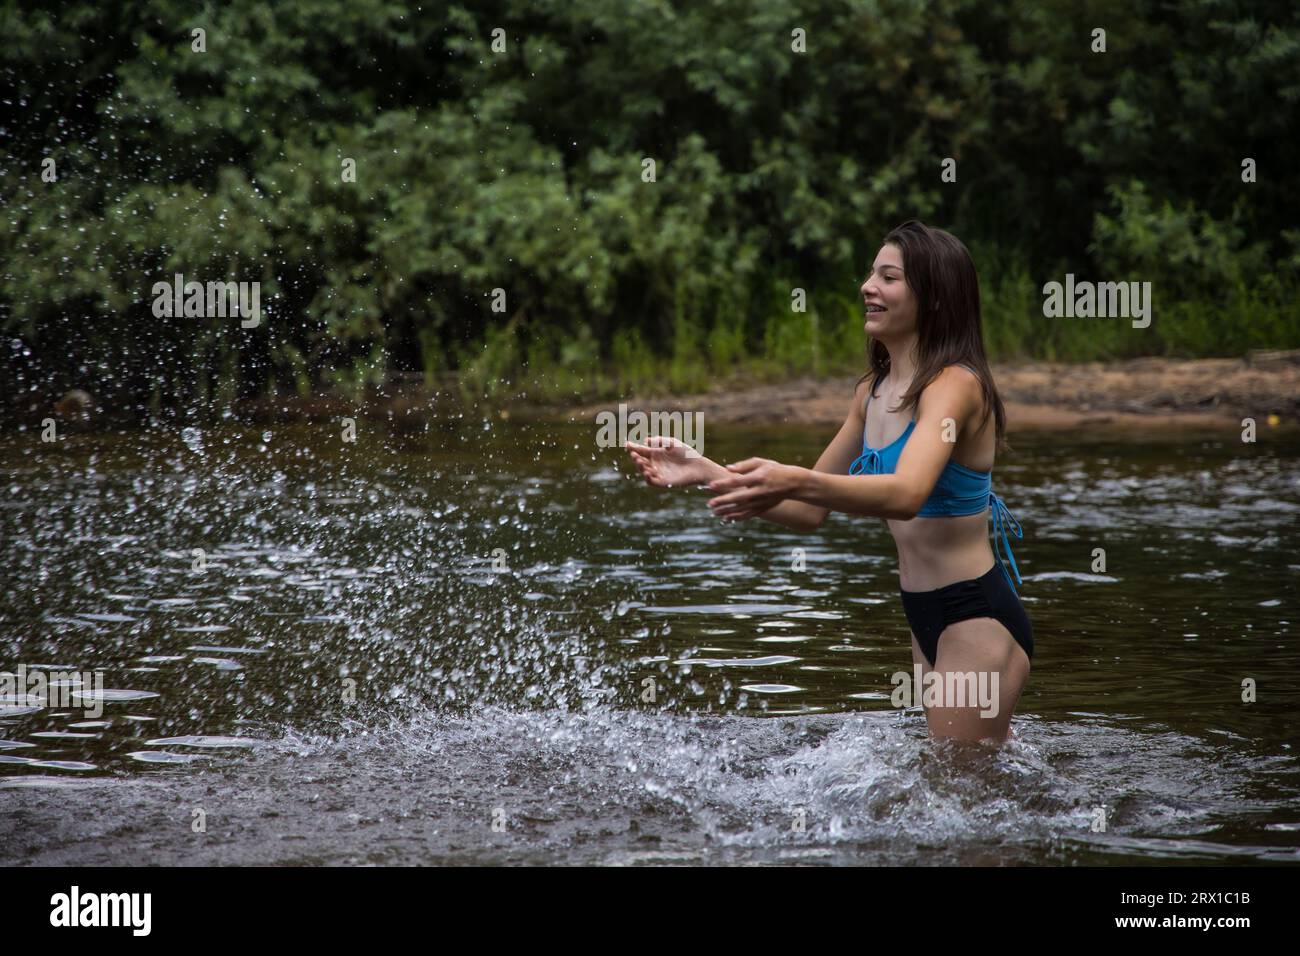 Adolescente éclaboussant de l'eau dans une rivière Banque D'Images